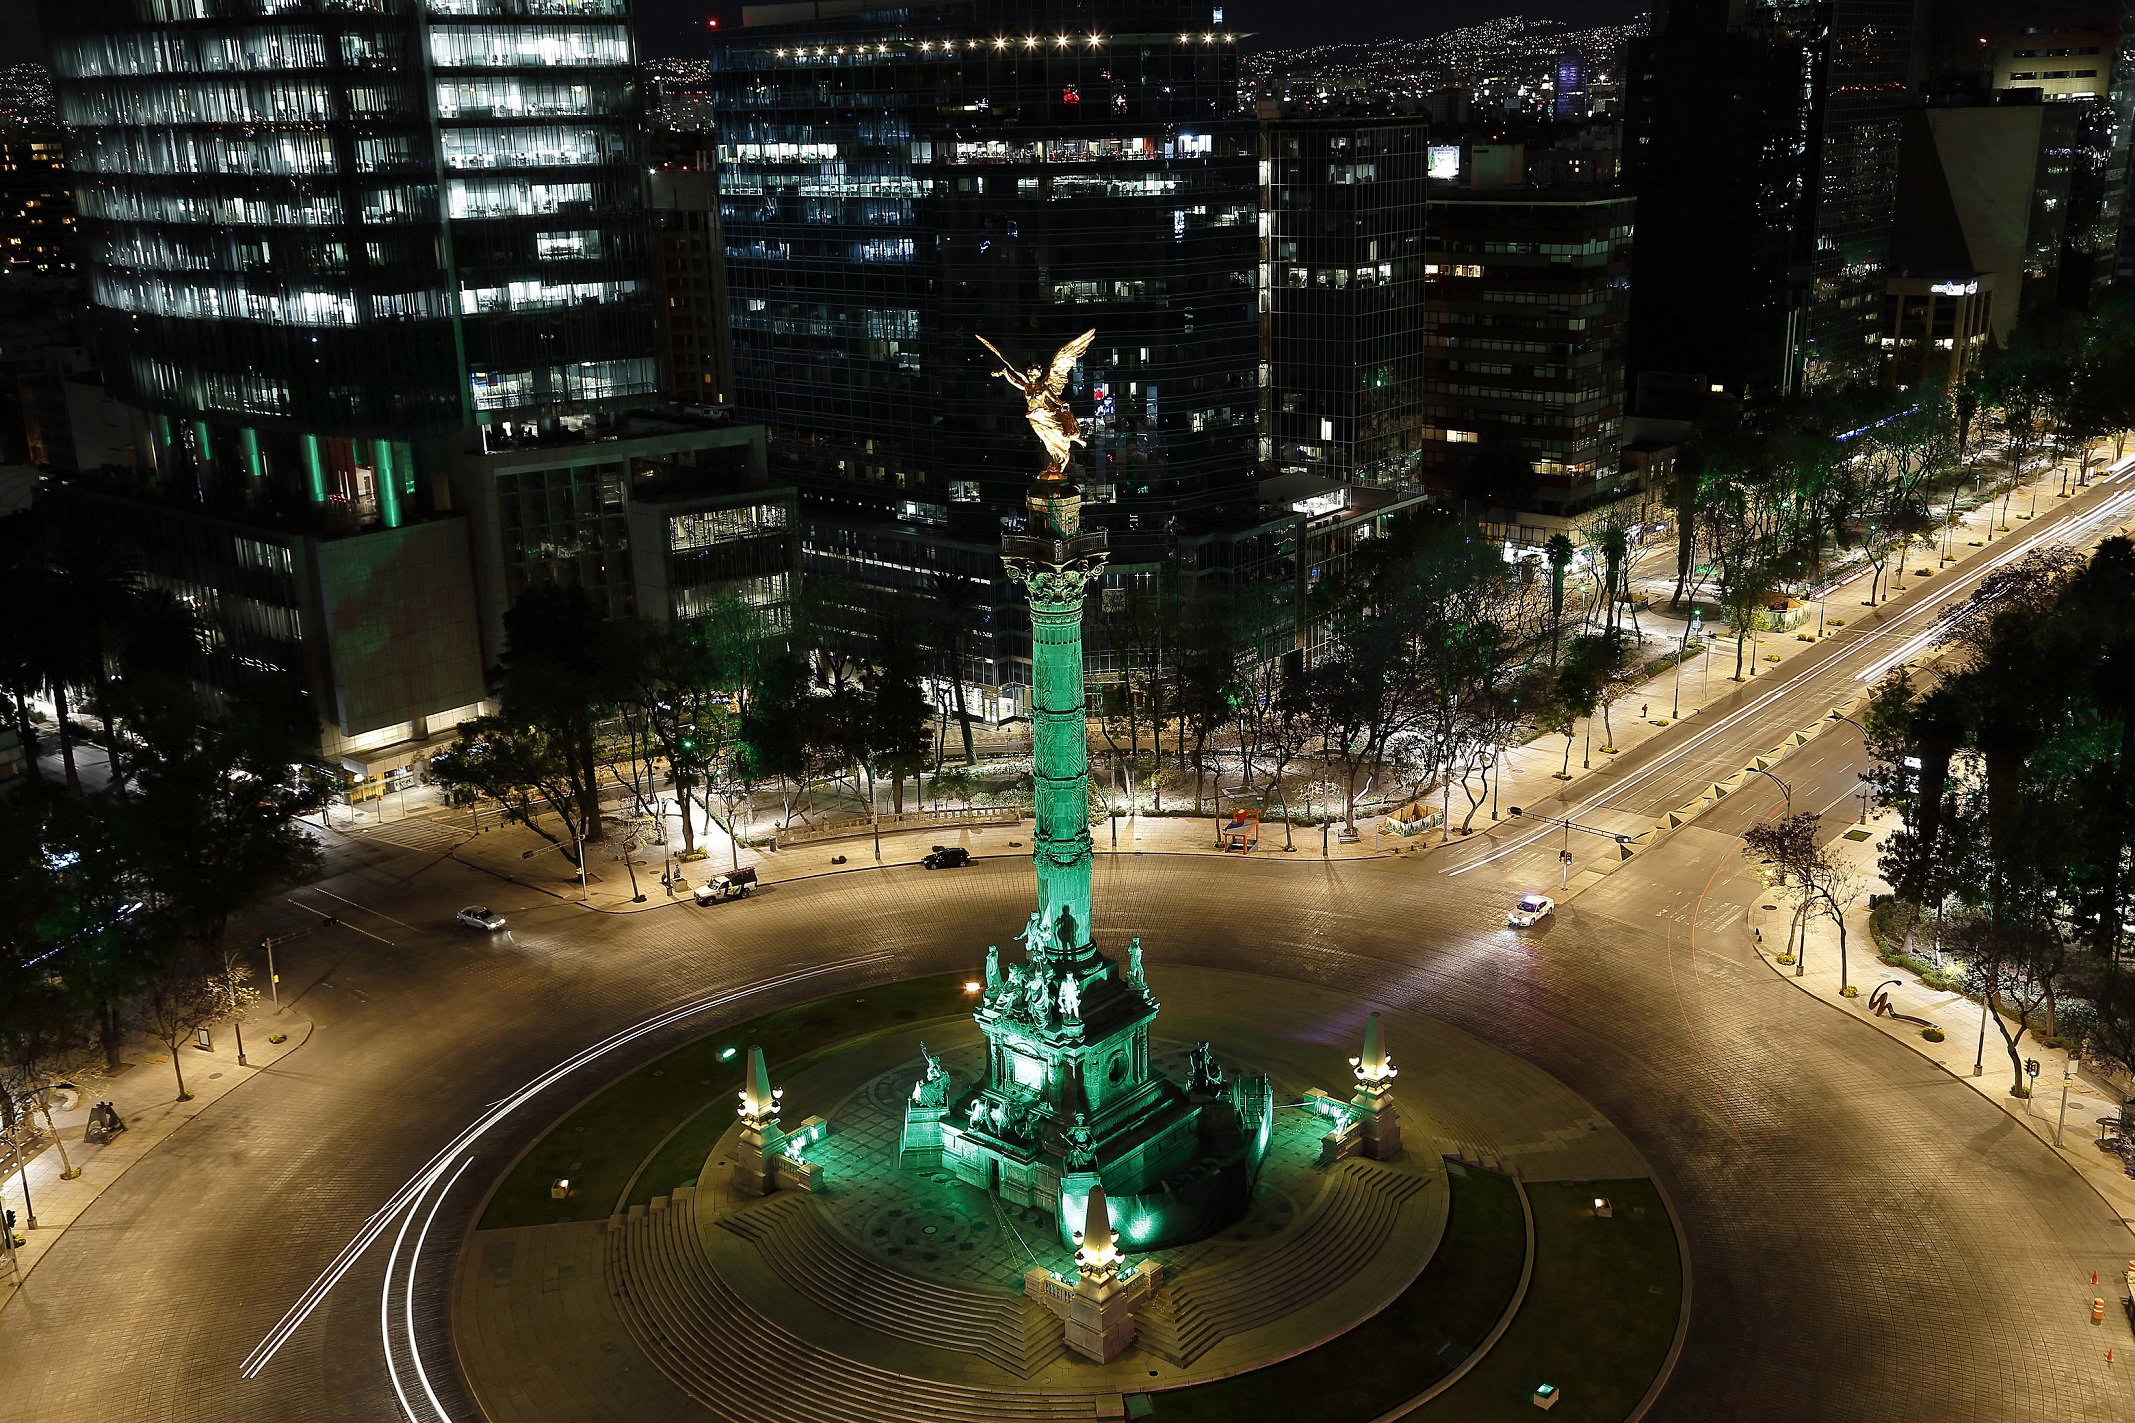 El Angel de la Independencia in Mexico City 